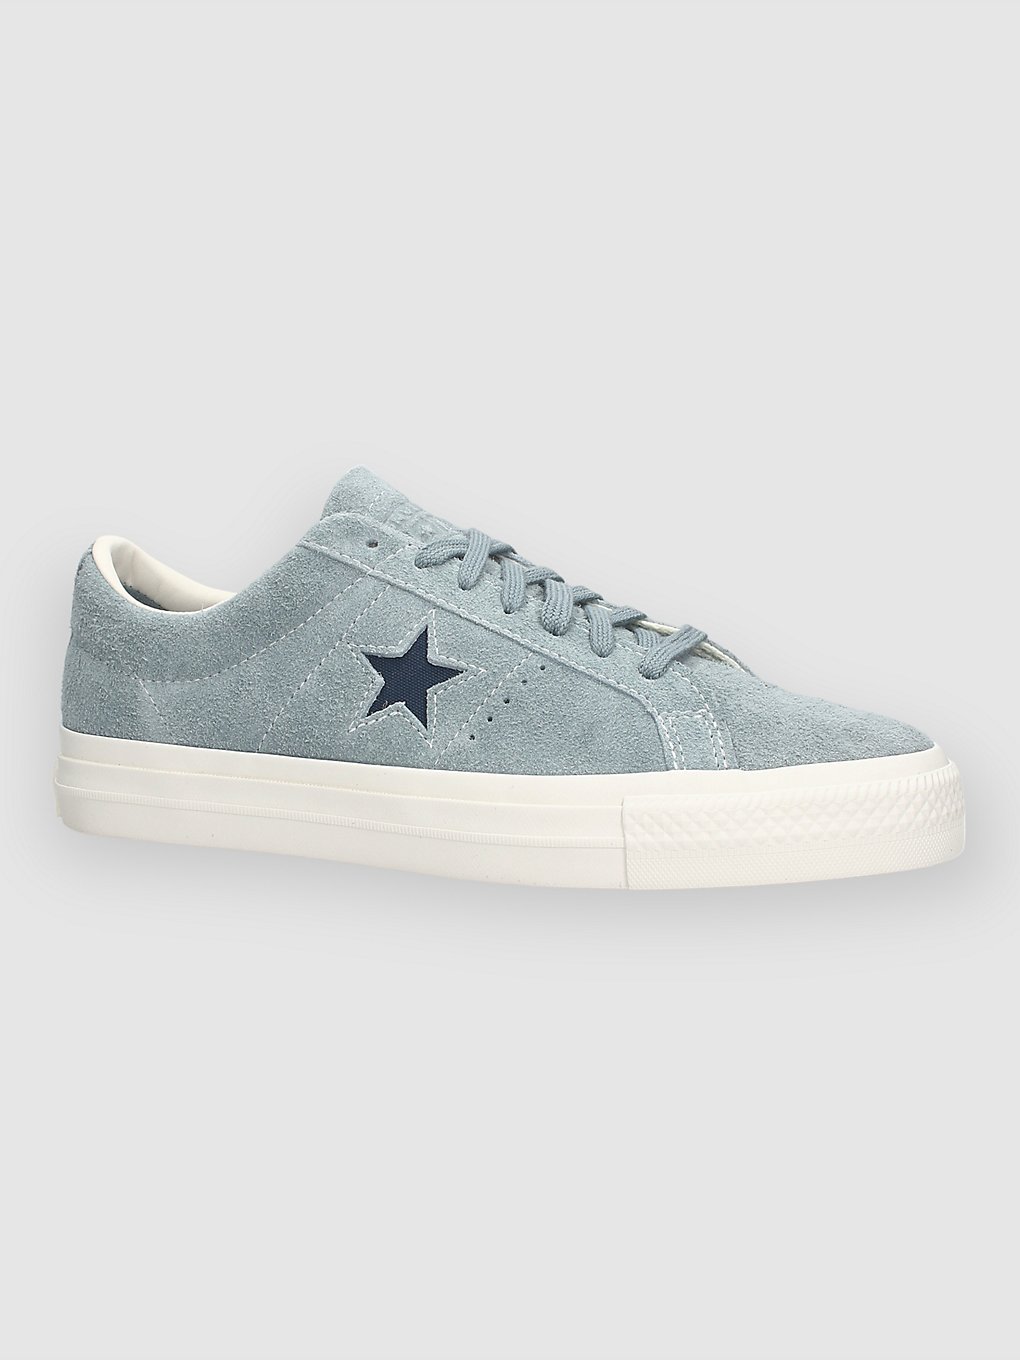 Converse One Star Pro Vintage Suede Chaussures de skate bleu